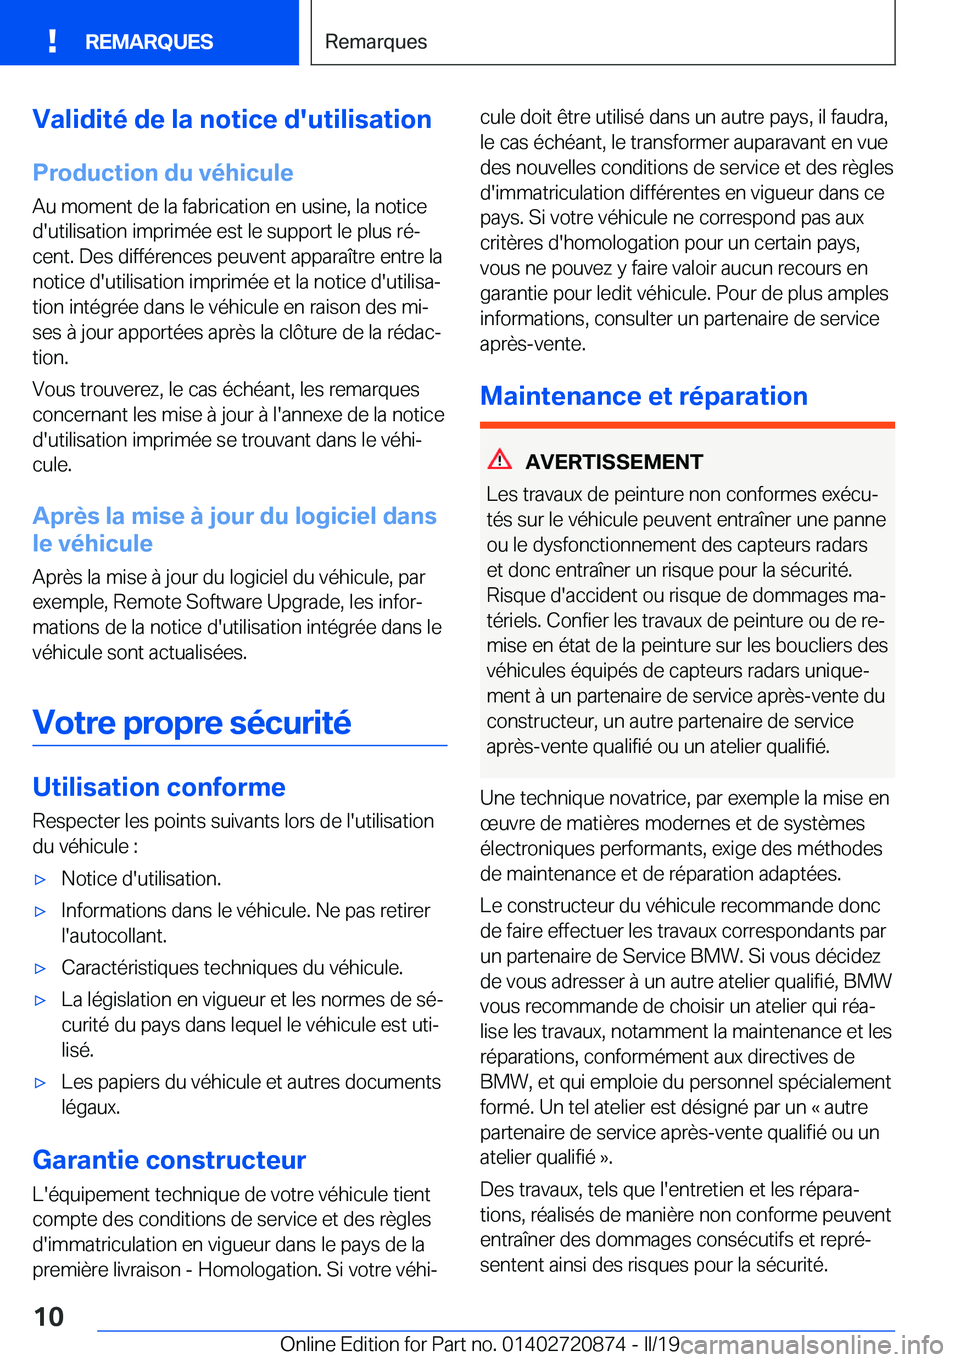 BMW X7 2019  Notices Demploi (in French) �V�a�l�i�d�i�t�é��d�e��l�a��n�o�t�i�c�e��d�'�u�t�i�l�i�s�a�t�i�o�n
�P�r�o�d�u�c�t�i�o�n��d�u��v�é�h�i�c�u�l�e
�A�u��m�o�m�e�n�t��d�e��l�a��f�a�b�r�i�c�a�t�i�o�n��e�n��u�s�i�n�e�,��l